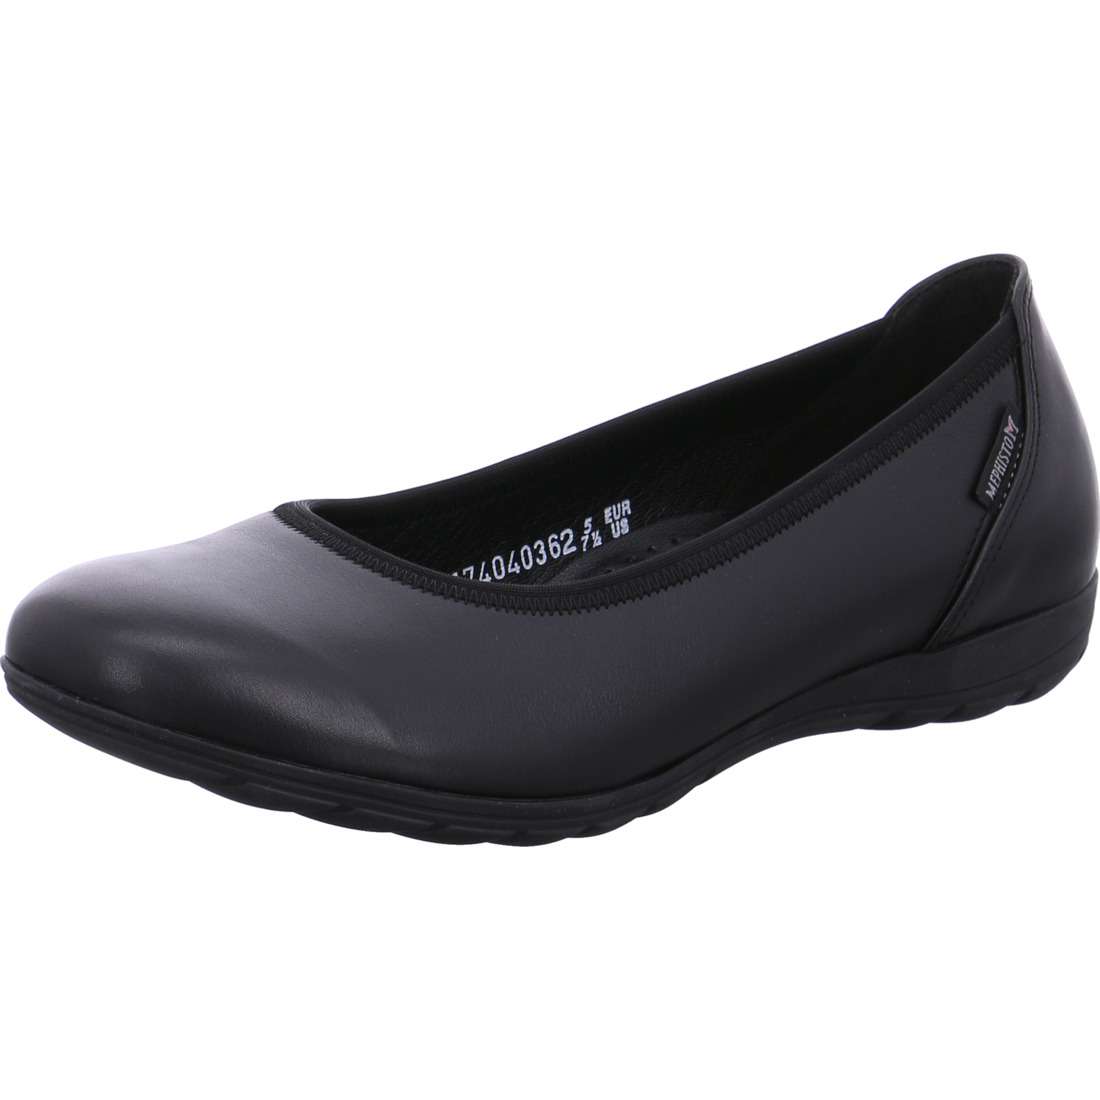 Emilie cuir Noir - Chaussures Pirotais 